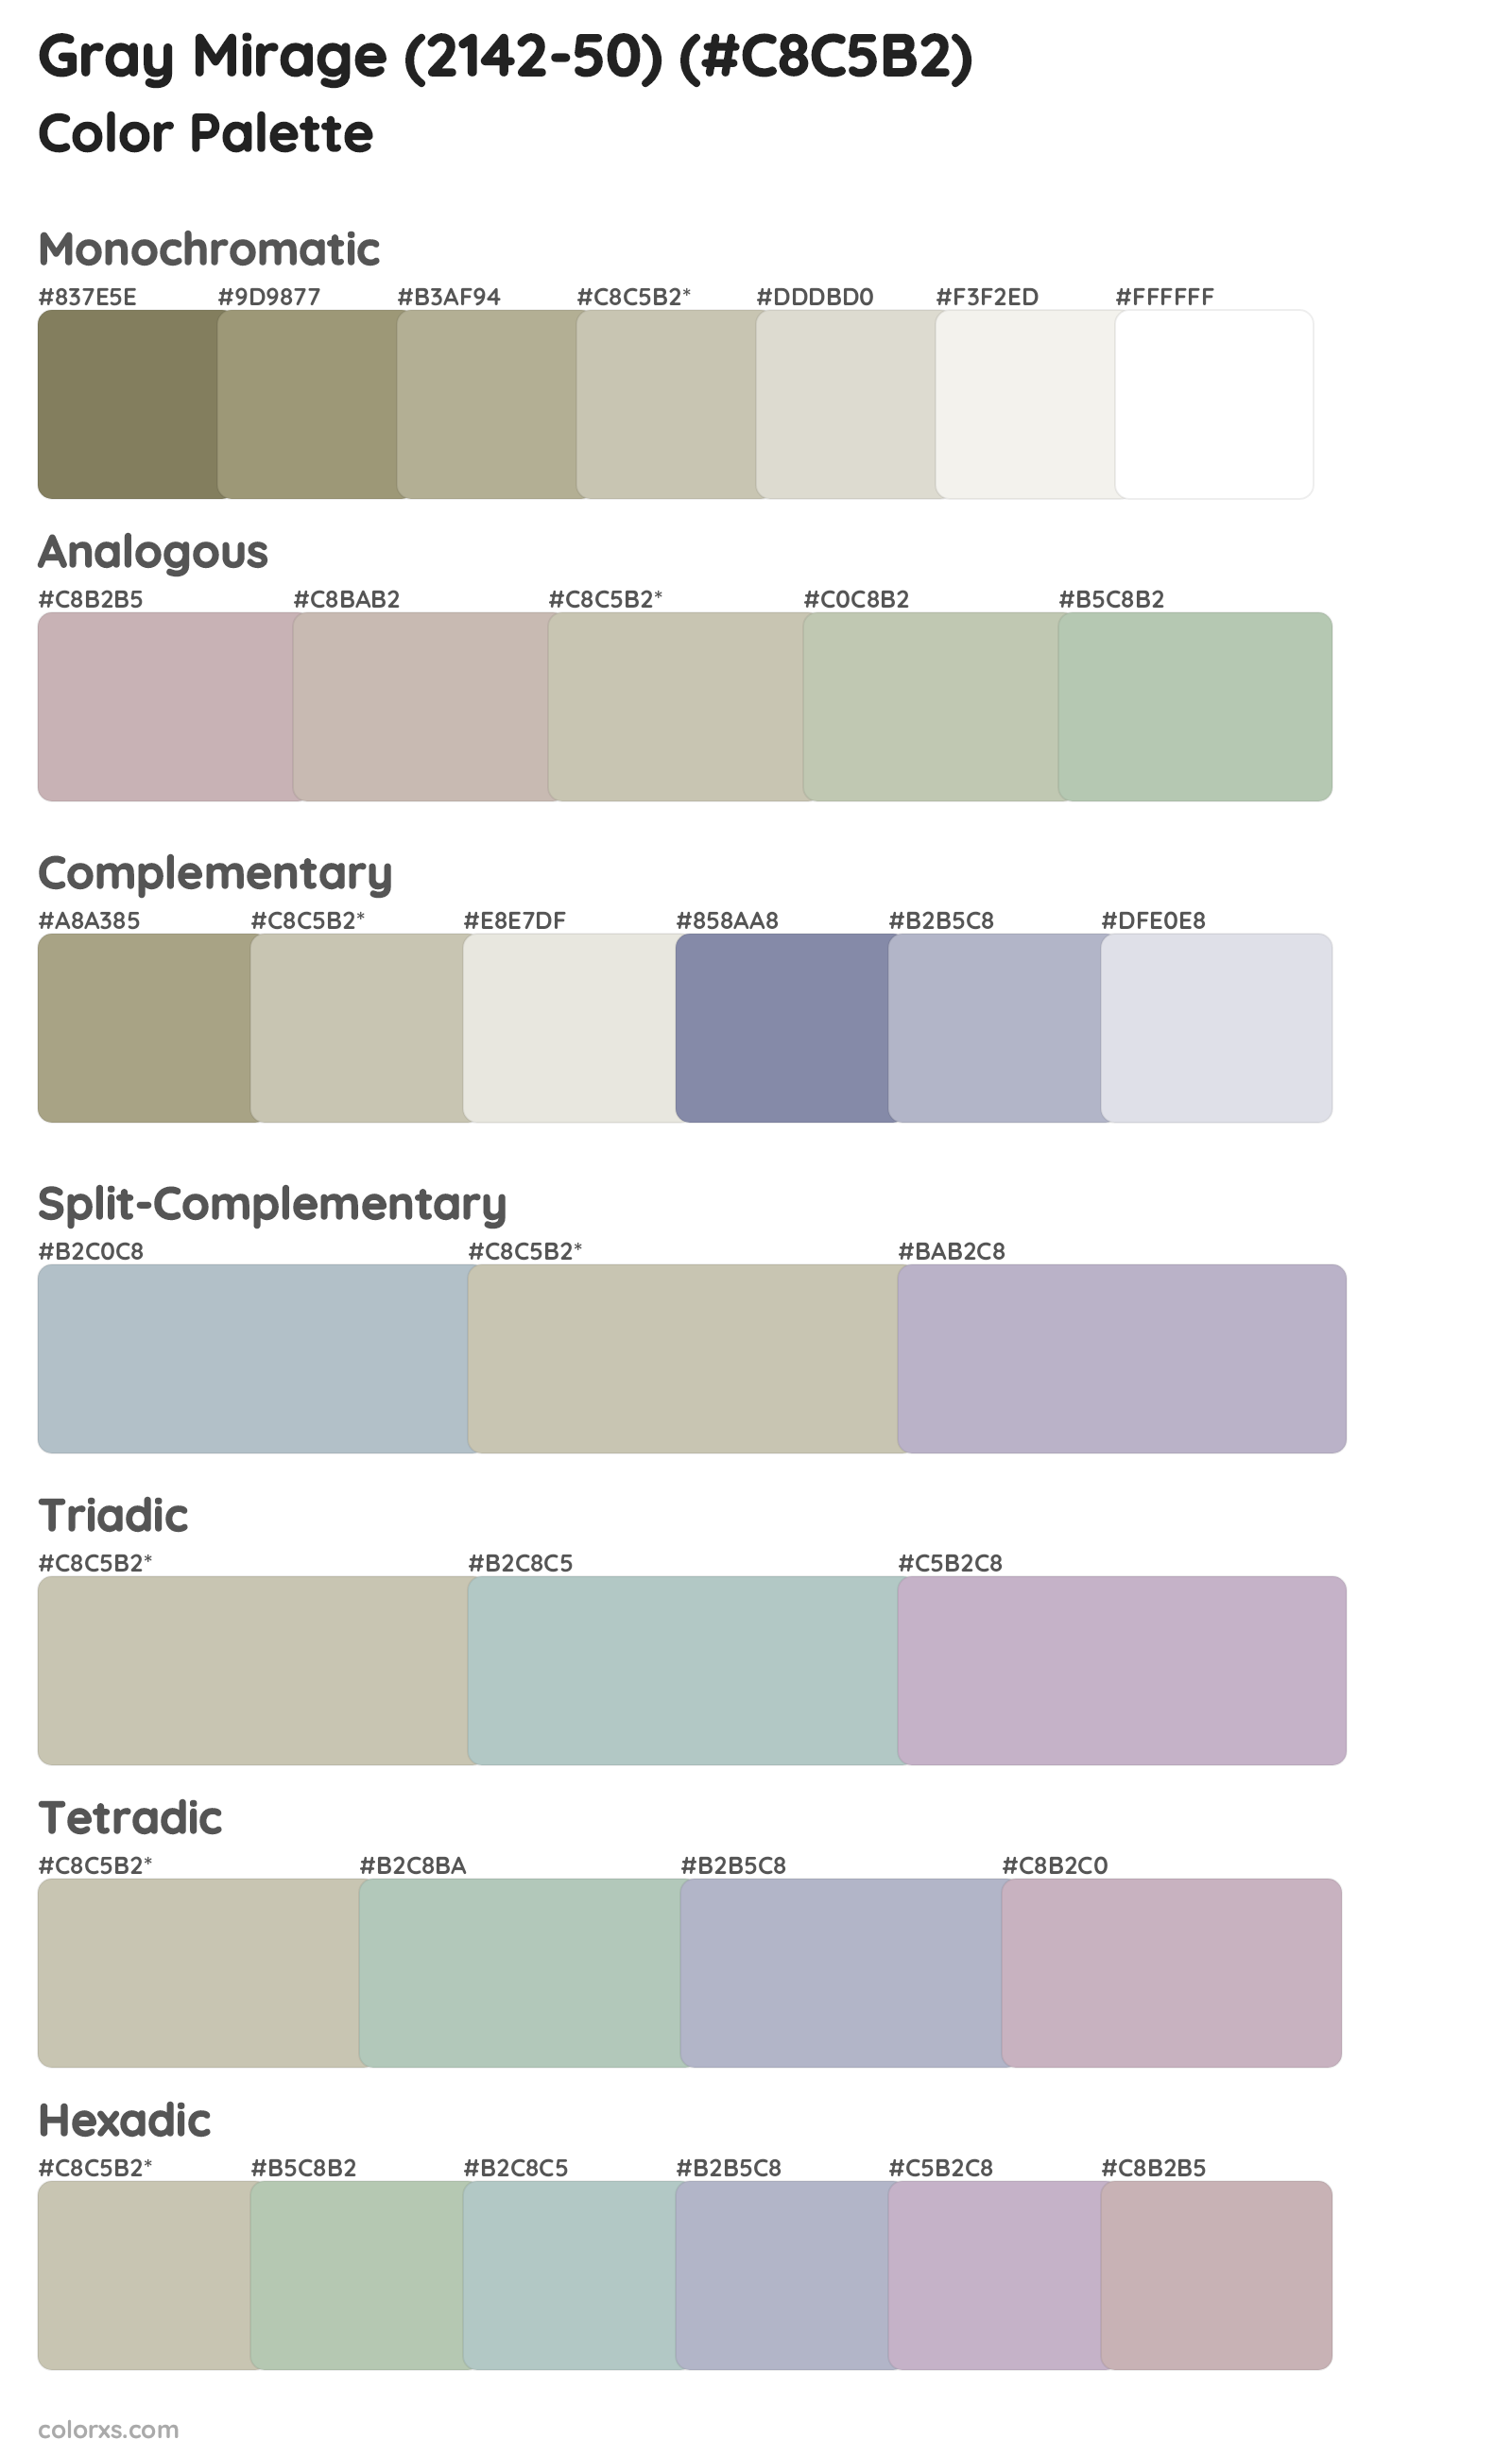 Gray Mirage (2142-50) Color Scheme Palettes